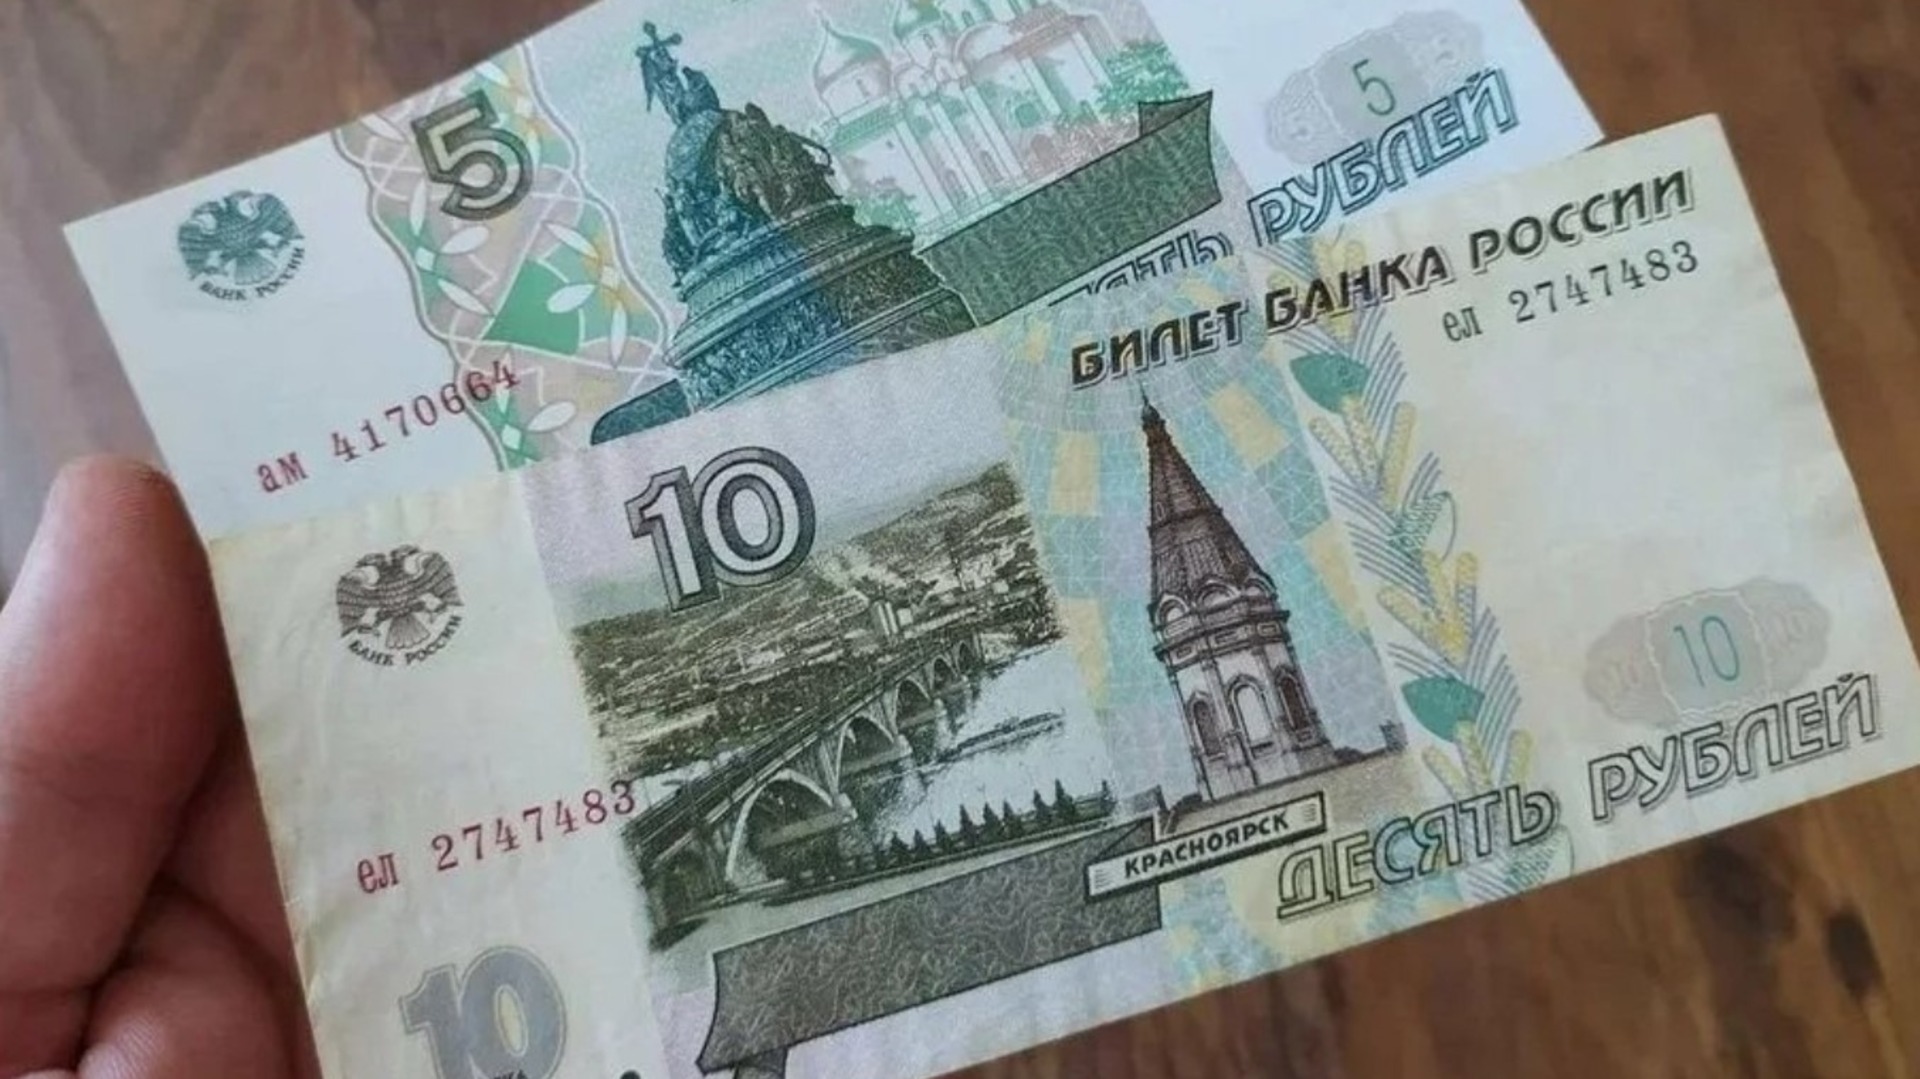 5 бумажные купюры. Бумажные деньги 5 и 10 рублей. 5 И 10 рублей бумажные. Новая купюра 5 рублей. 10 Рублей бумажные.